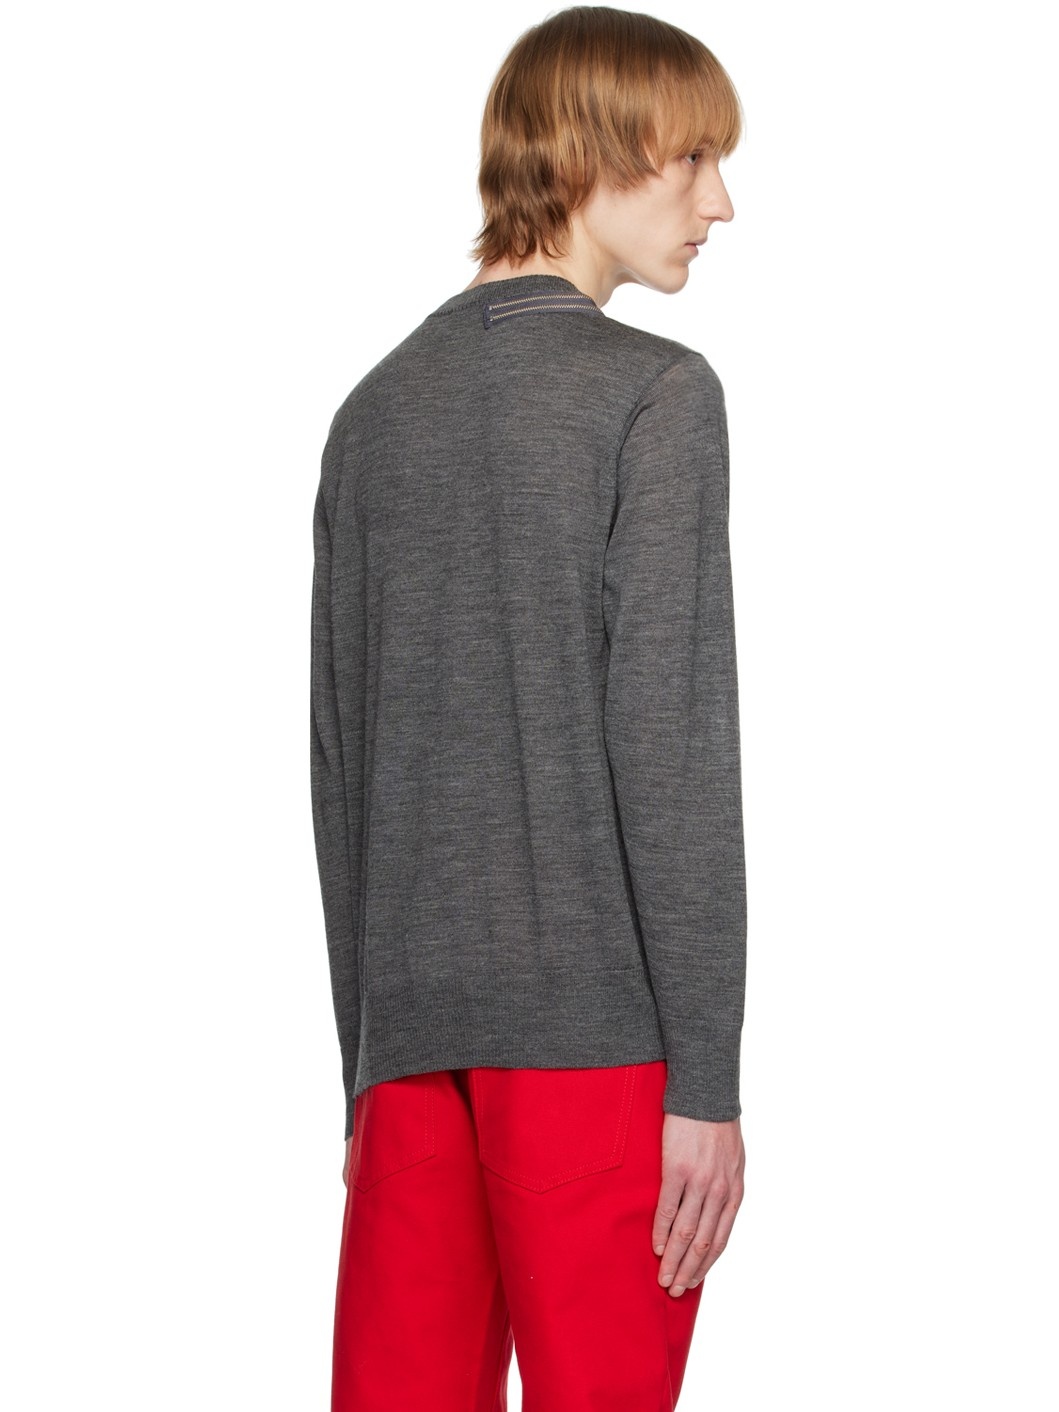 Gray Zip Sweater - 3